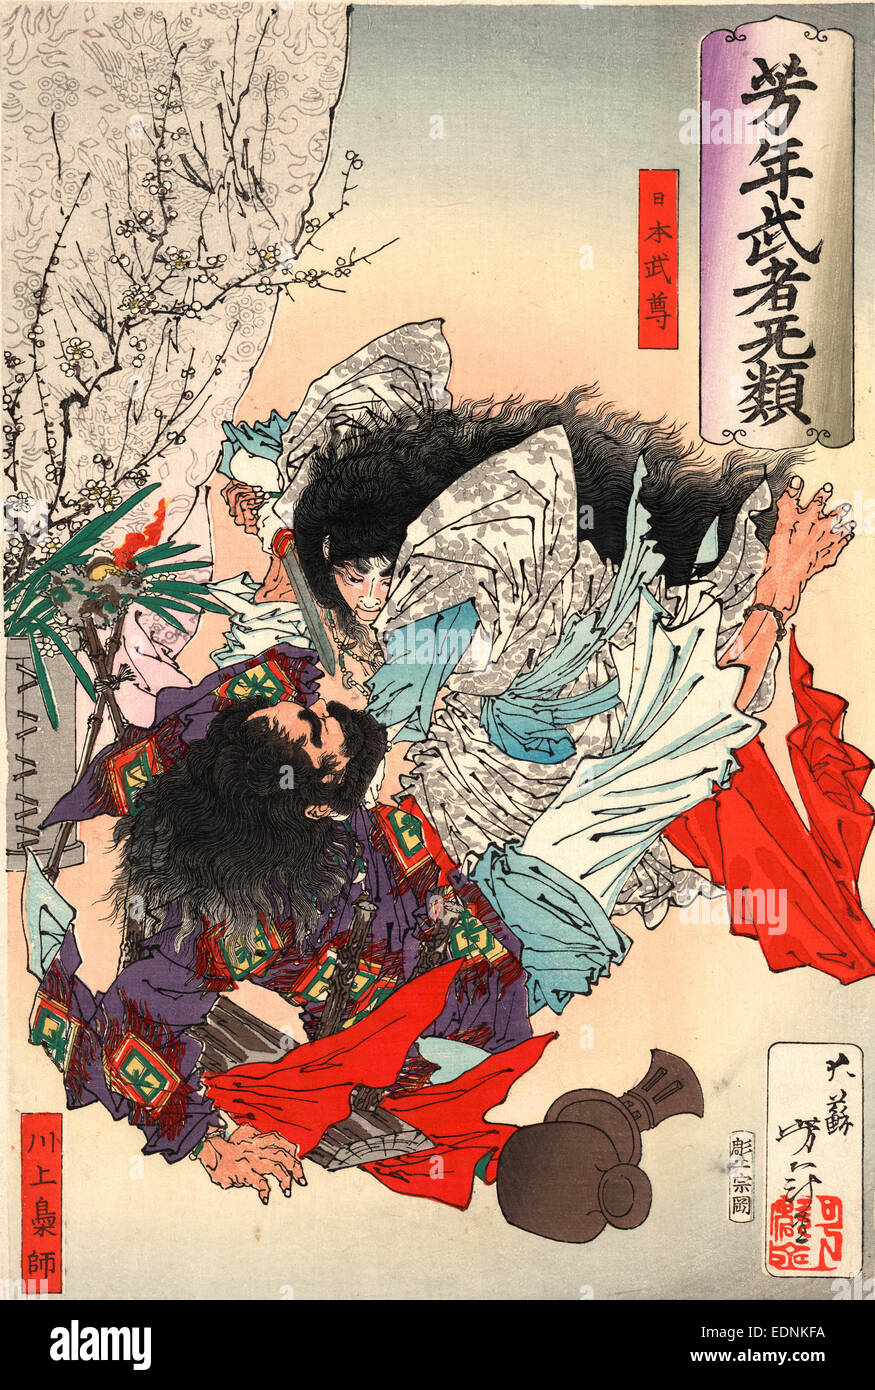 Yamato Takeru no mikoto, Taiso Yoshitoshi,, 1839-1892, l'artiste, [188-], 1 tirage : gravure sur bois, couleur ; 37,2 x 25,3 cm., héros populaire montre Imprimer Yamato Takeru no mikoto à propos de poignarder un homme avec une épée. Banque D'Images